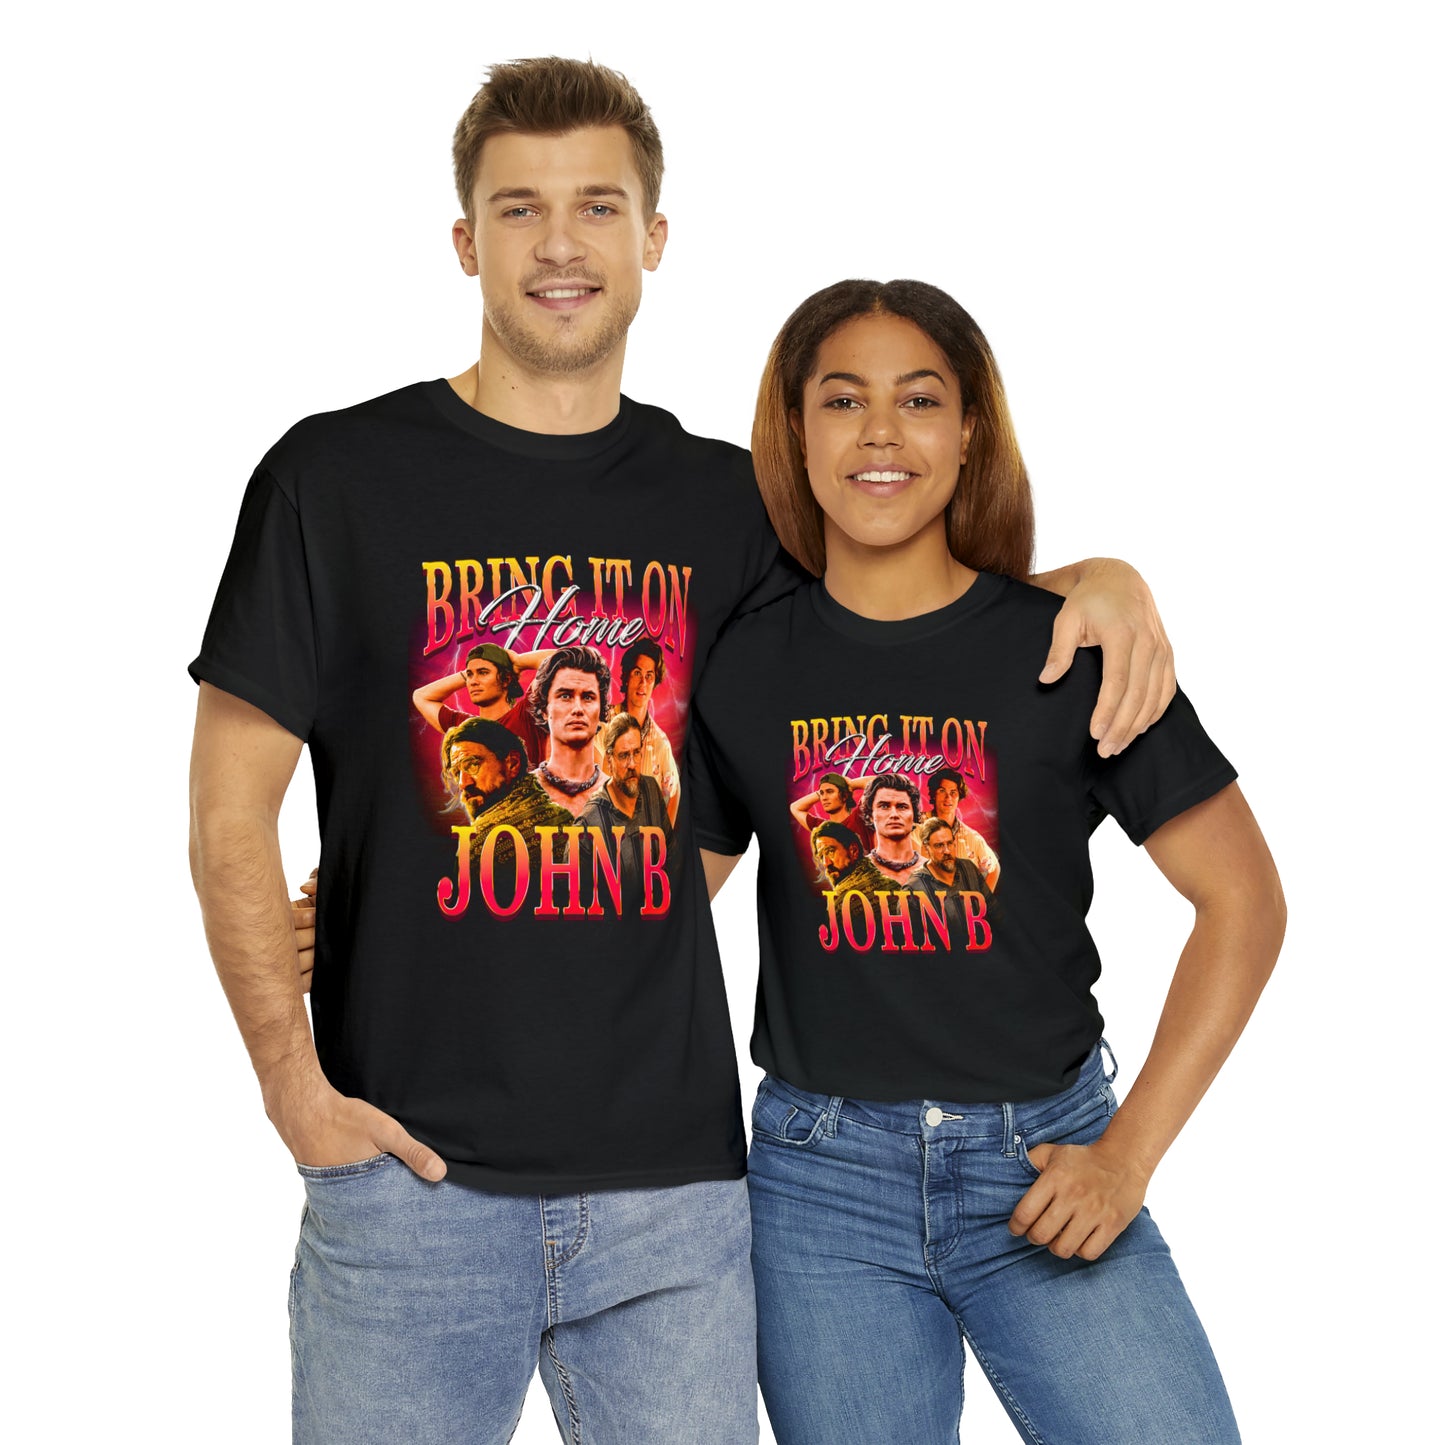 Bring It on Home, John B T-Shirt!